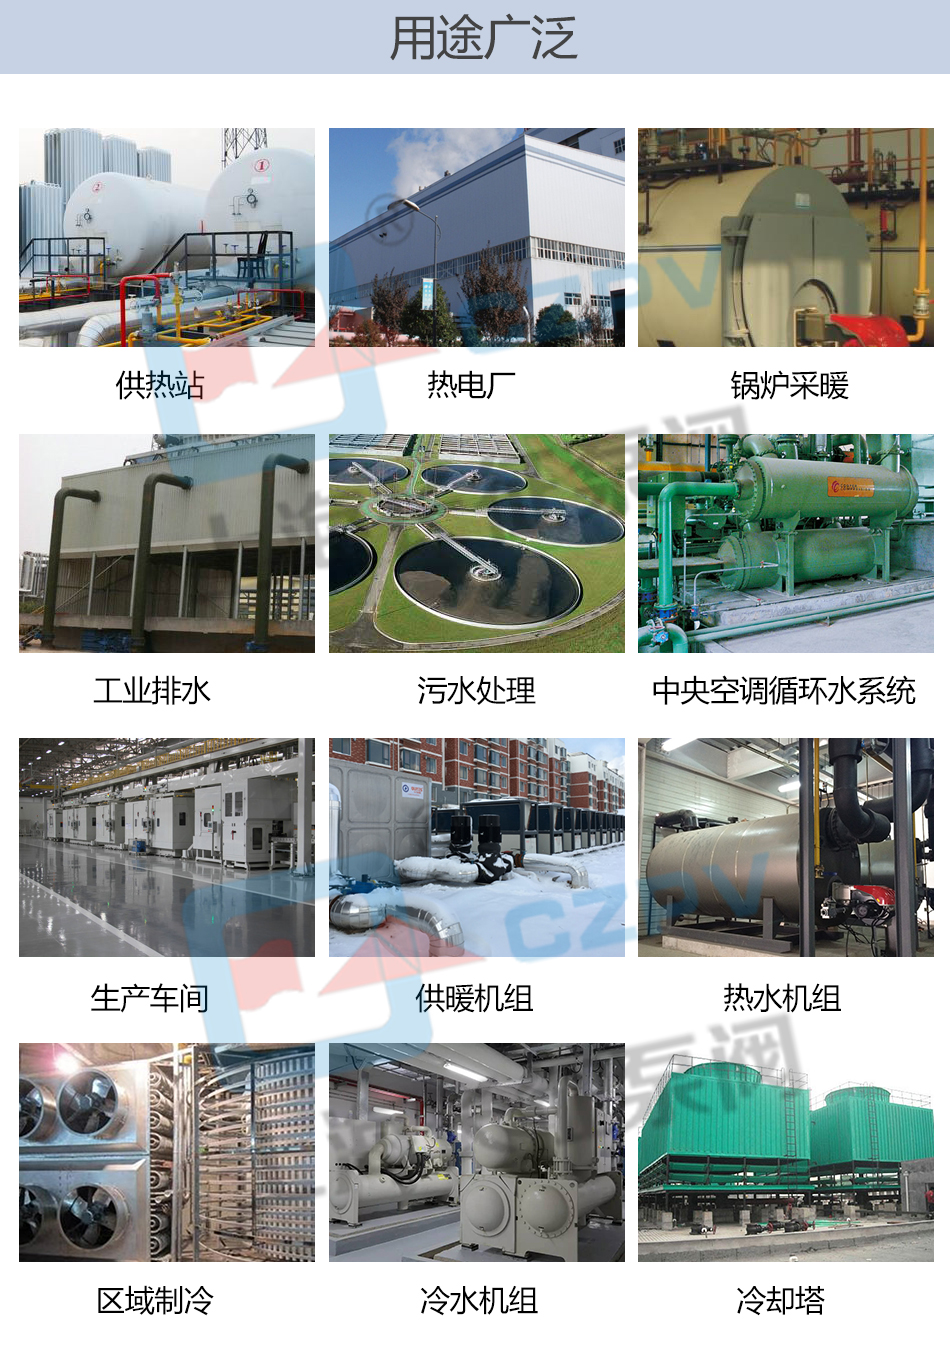 PBG型屏蔽式管道離心循環水泵產品用途圖片